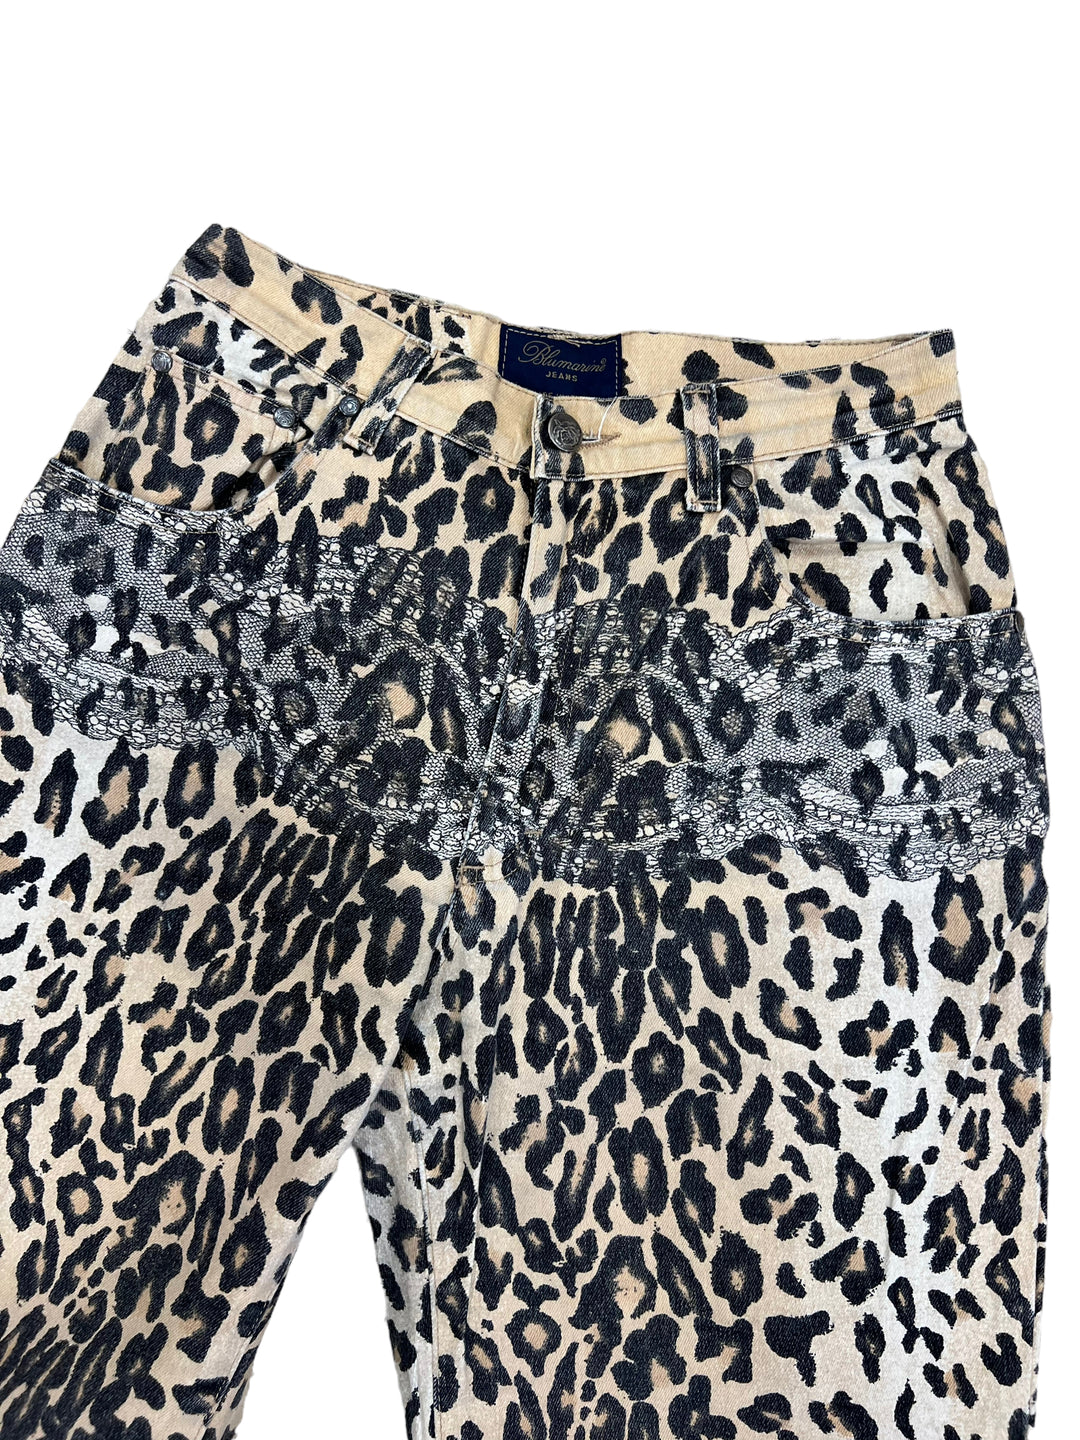 Blumarine High Waist Leopard Jeans Women’s Small(36)